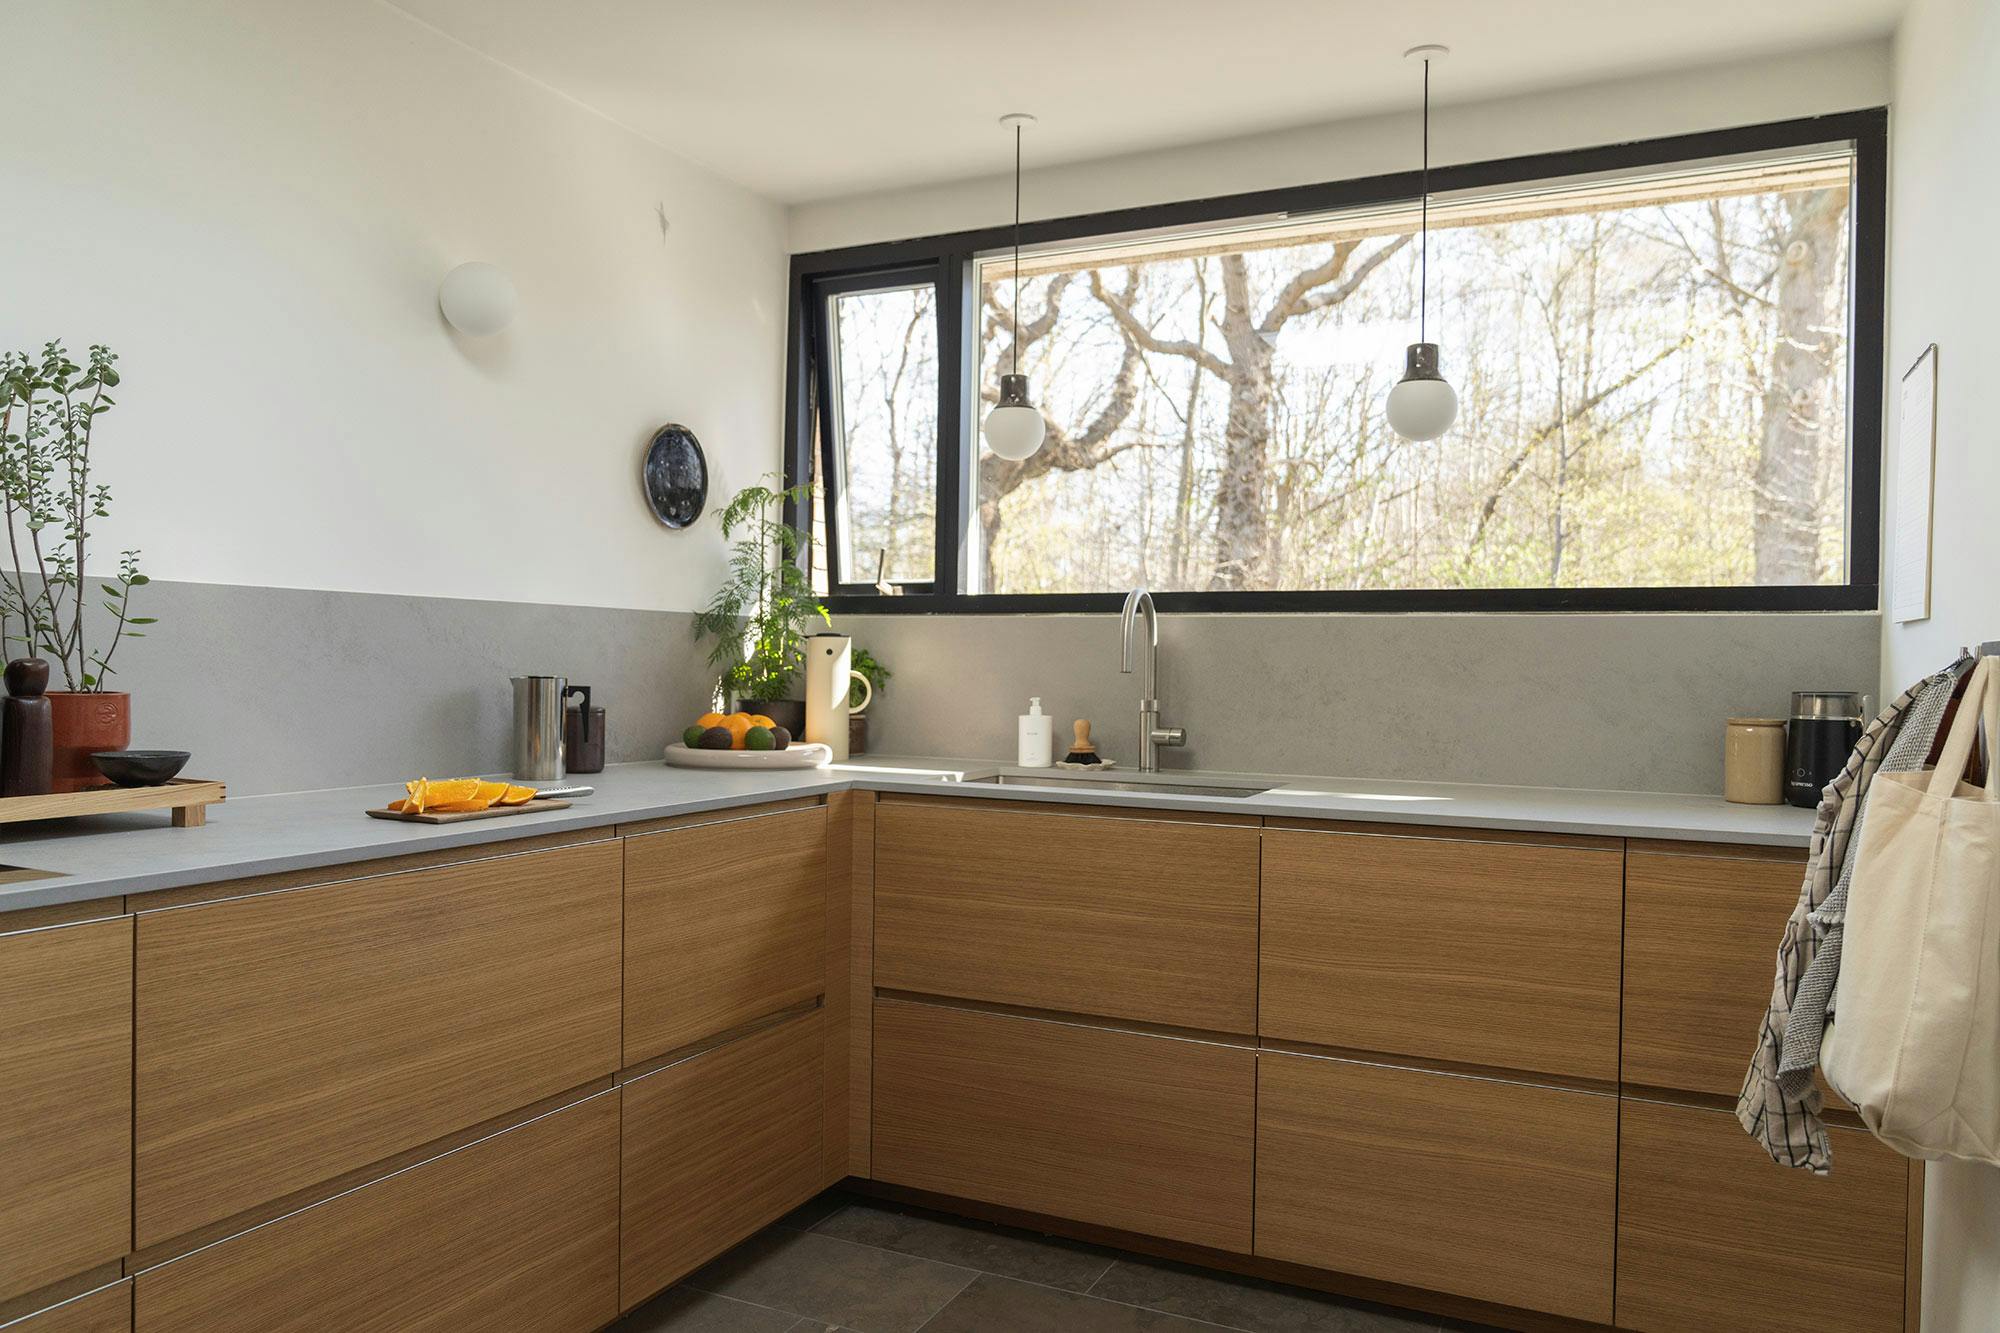 Numero immagine 37 della sezione corrente di Designer Saana Mantere chooses DKTN for her kitchen renovation di Cosentino Italia